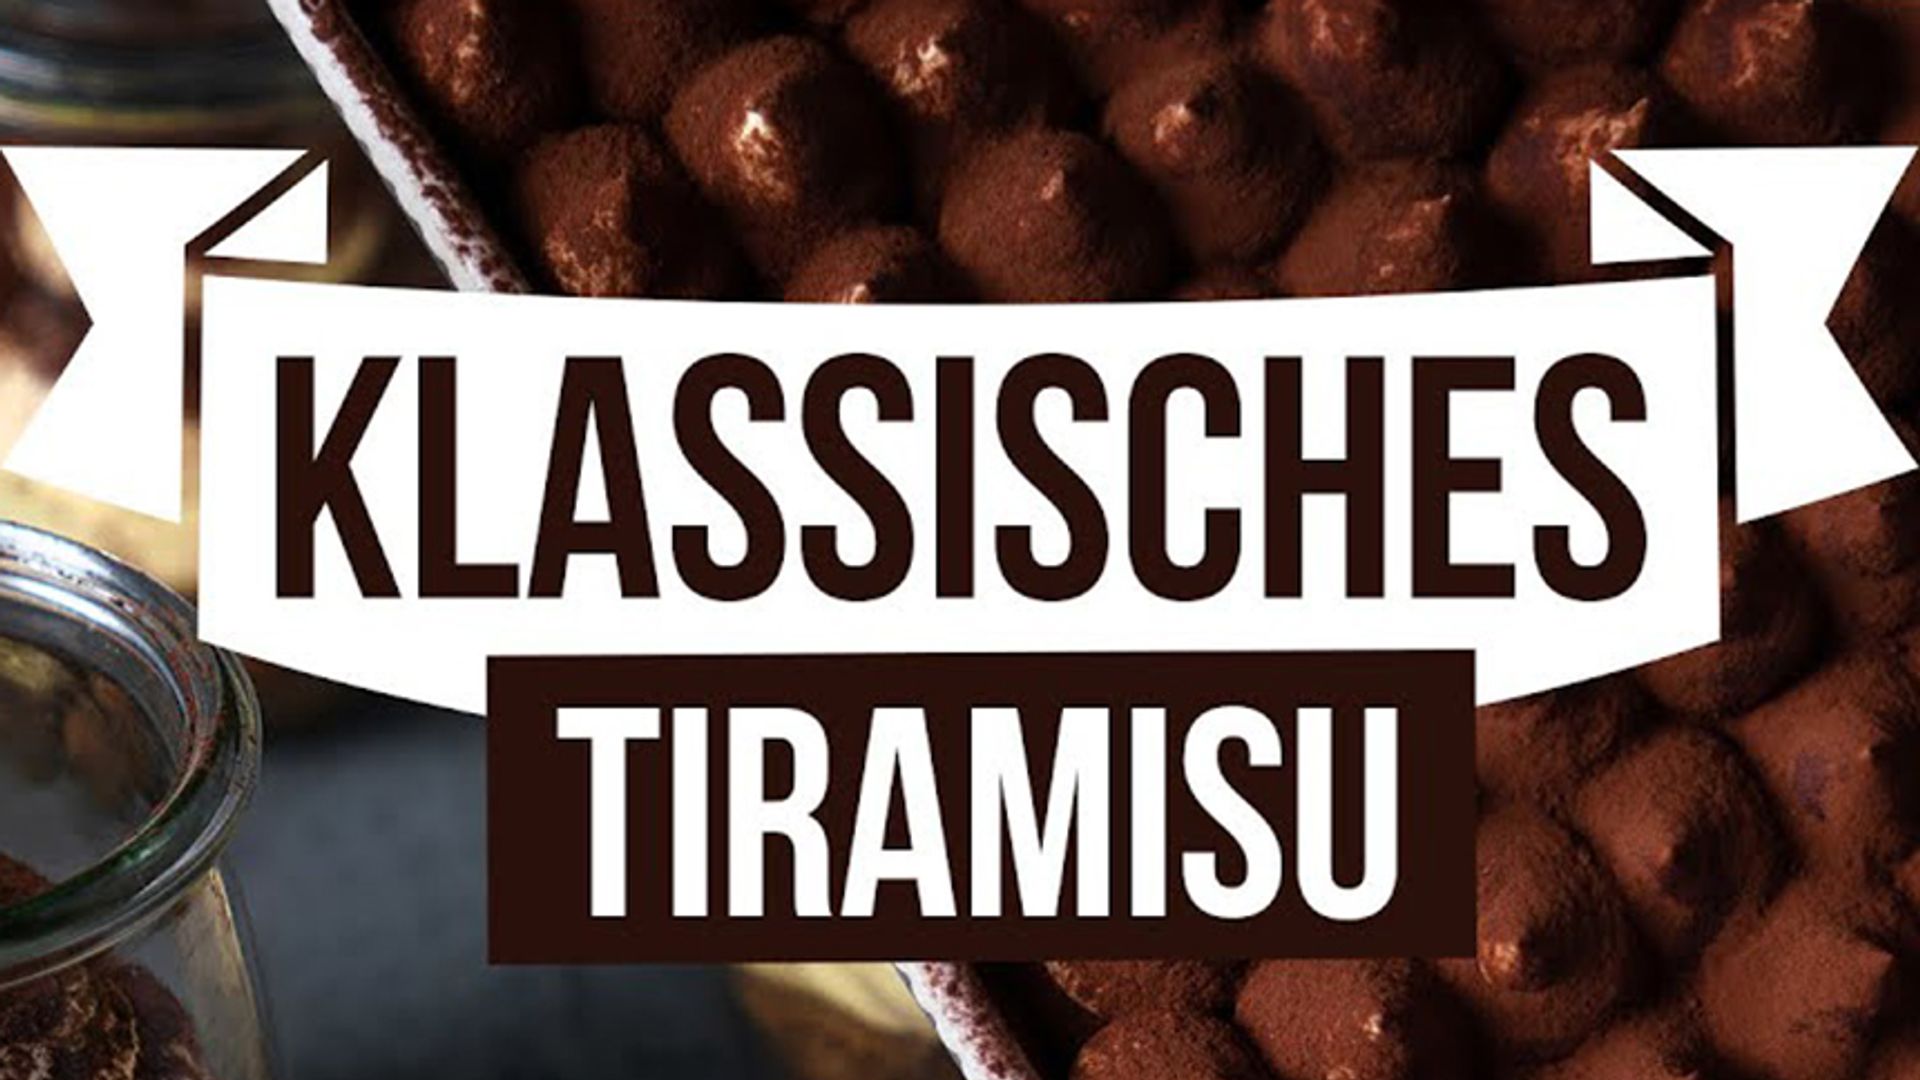 Tiramisu / Sallys Classics / Klassisches Tiramisu wie aus Italien / Sallys Welt